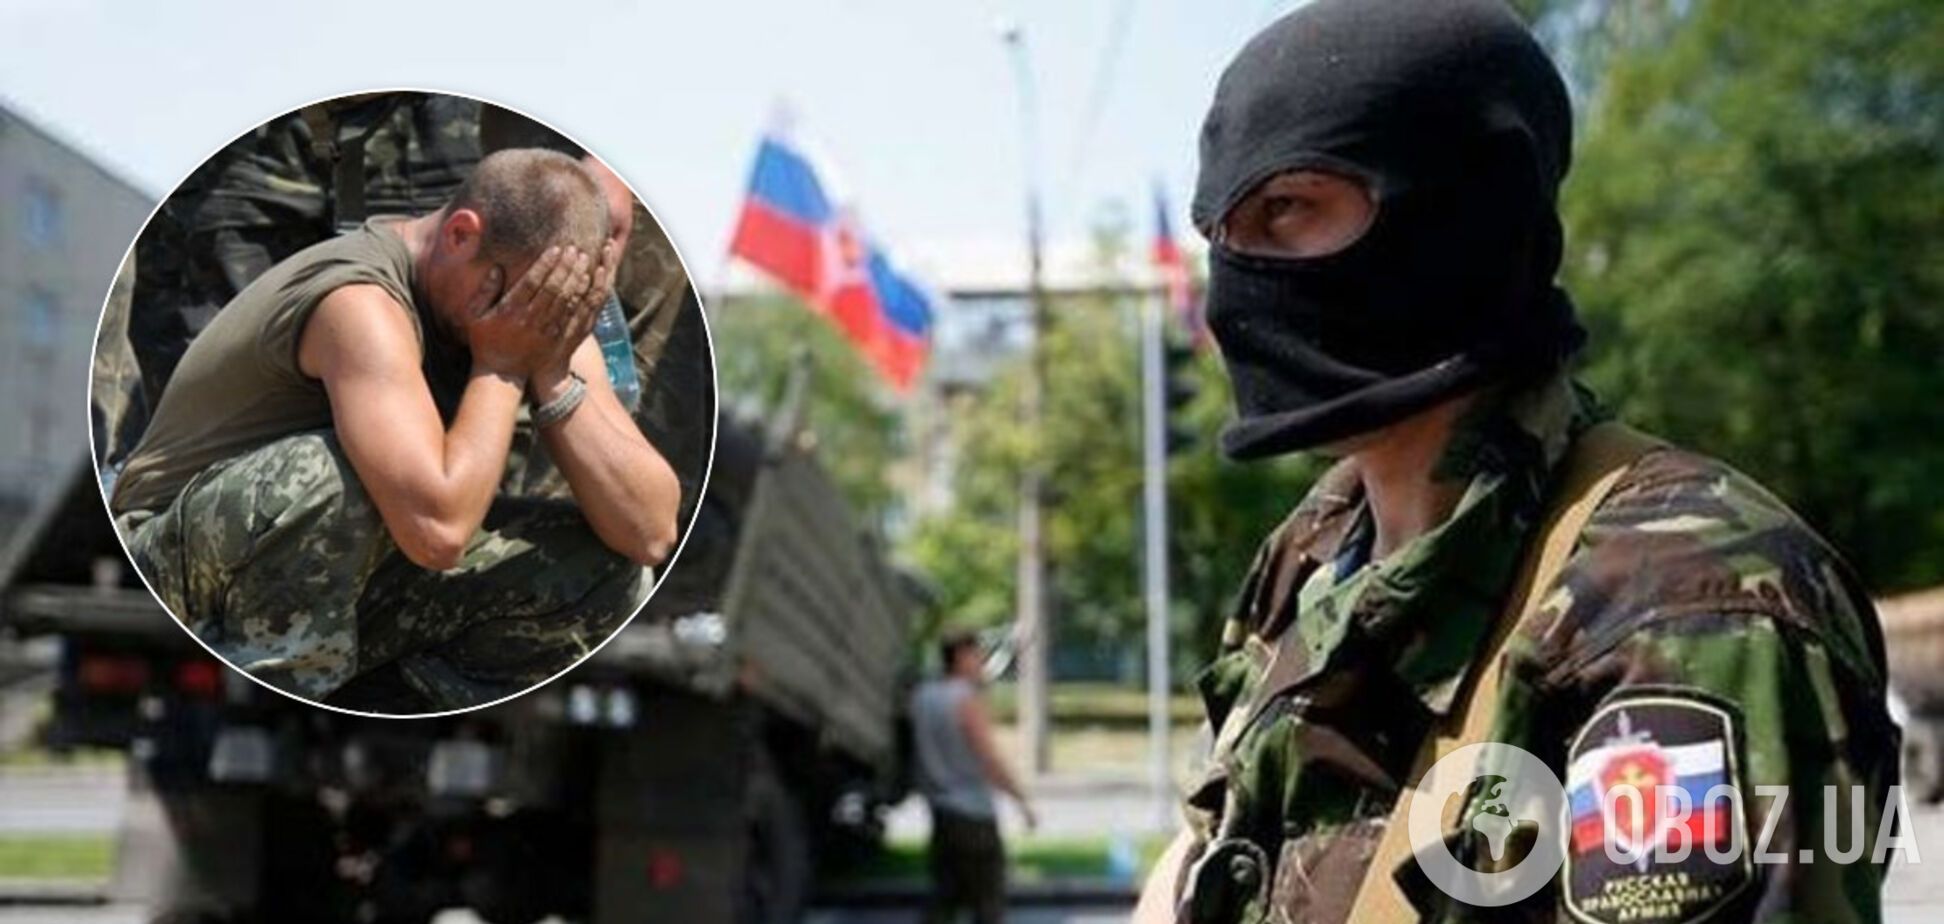 Бывшая пленница 'ДНР' рассказала об ужасных пытках террористов